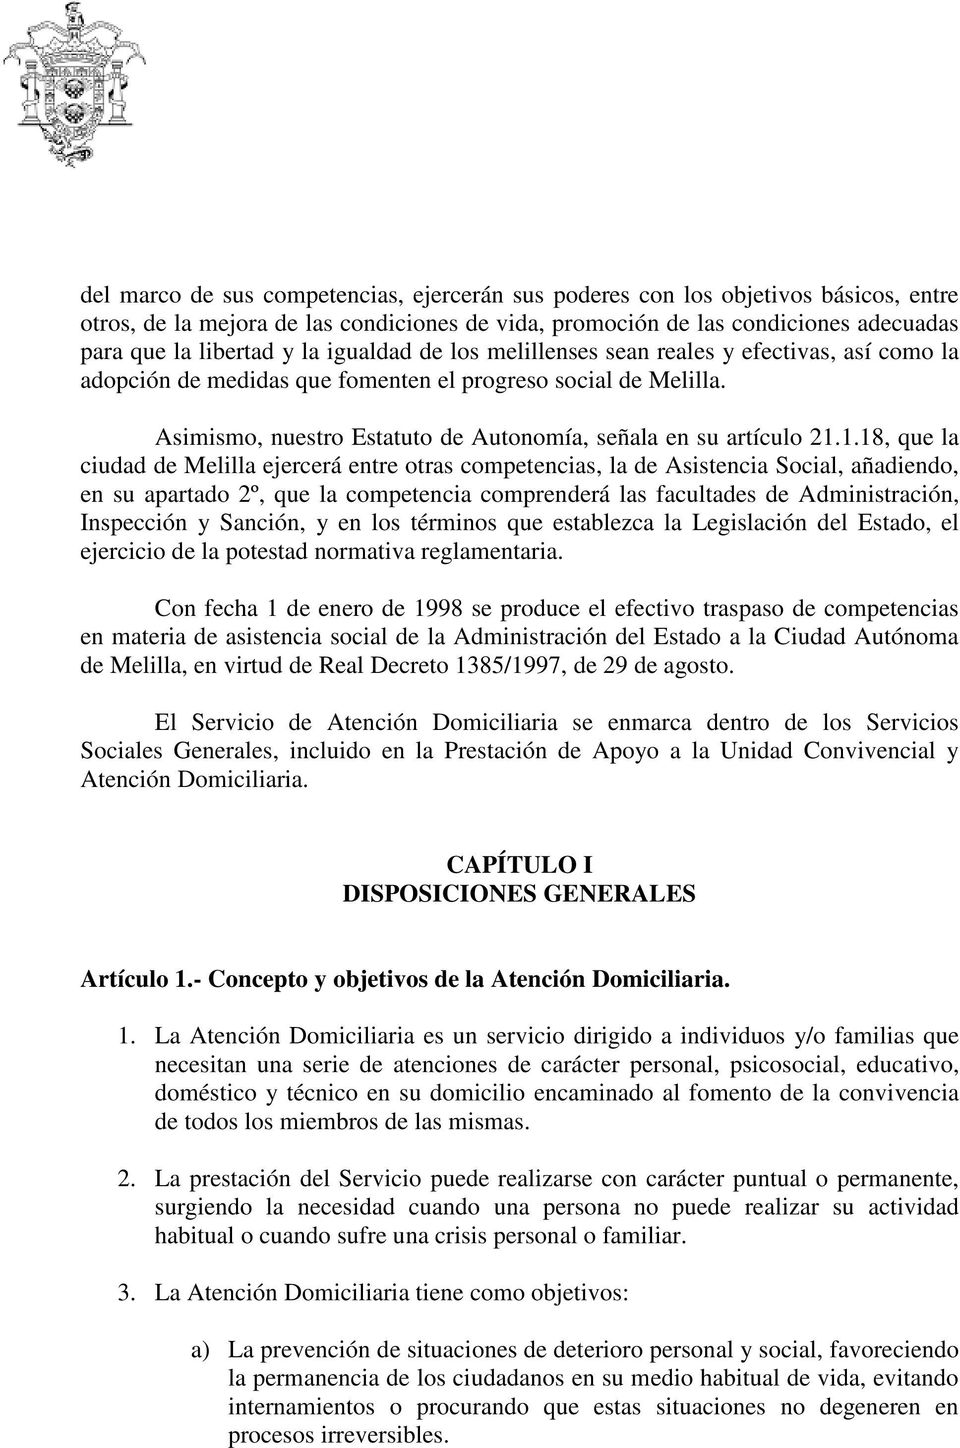 1.18, que la ciudad de Melilla ejercerá entre otras competencias, la de Asistencia Social, añadiendo, en su apartado 2º, que la competencia comprenderá las facultades de Administración, Inspección y